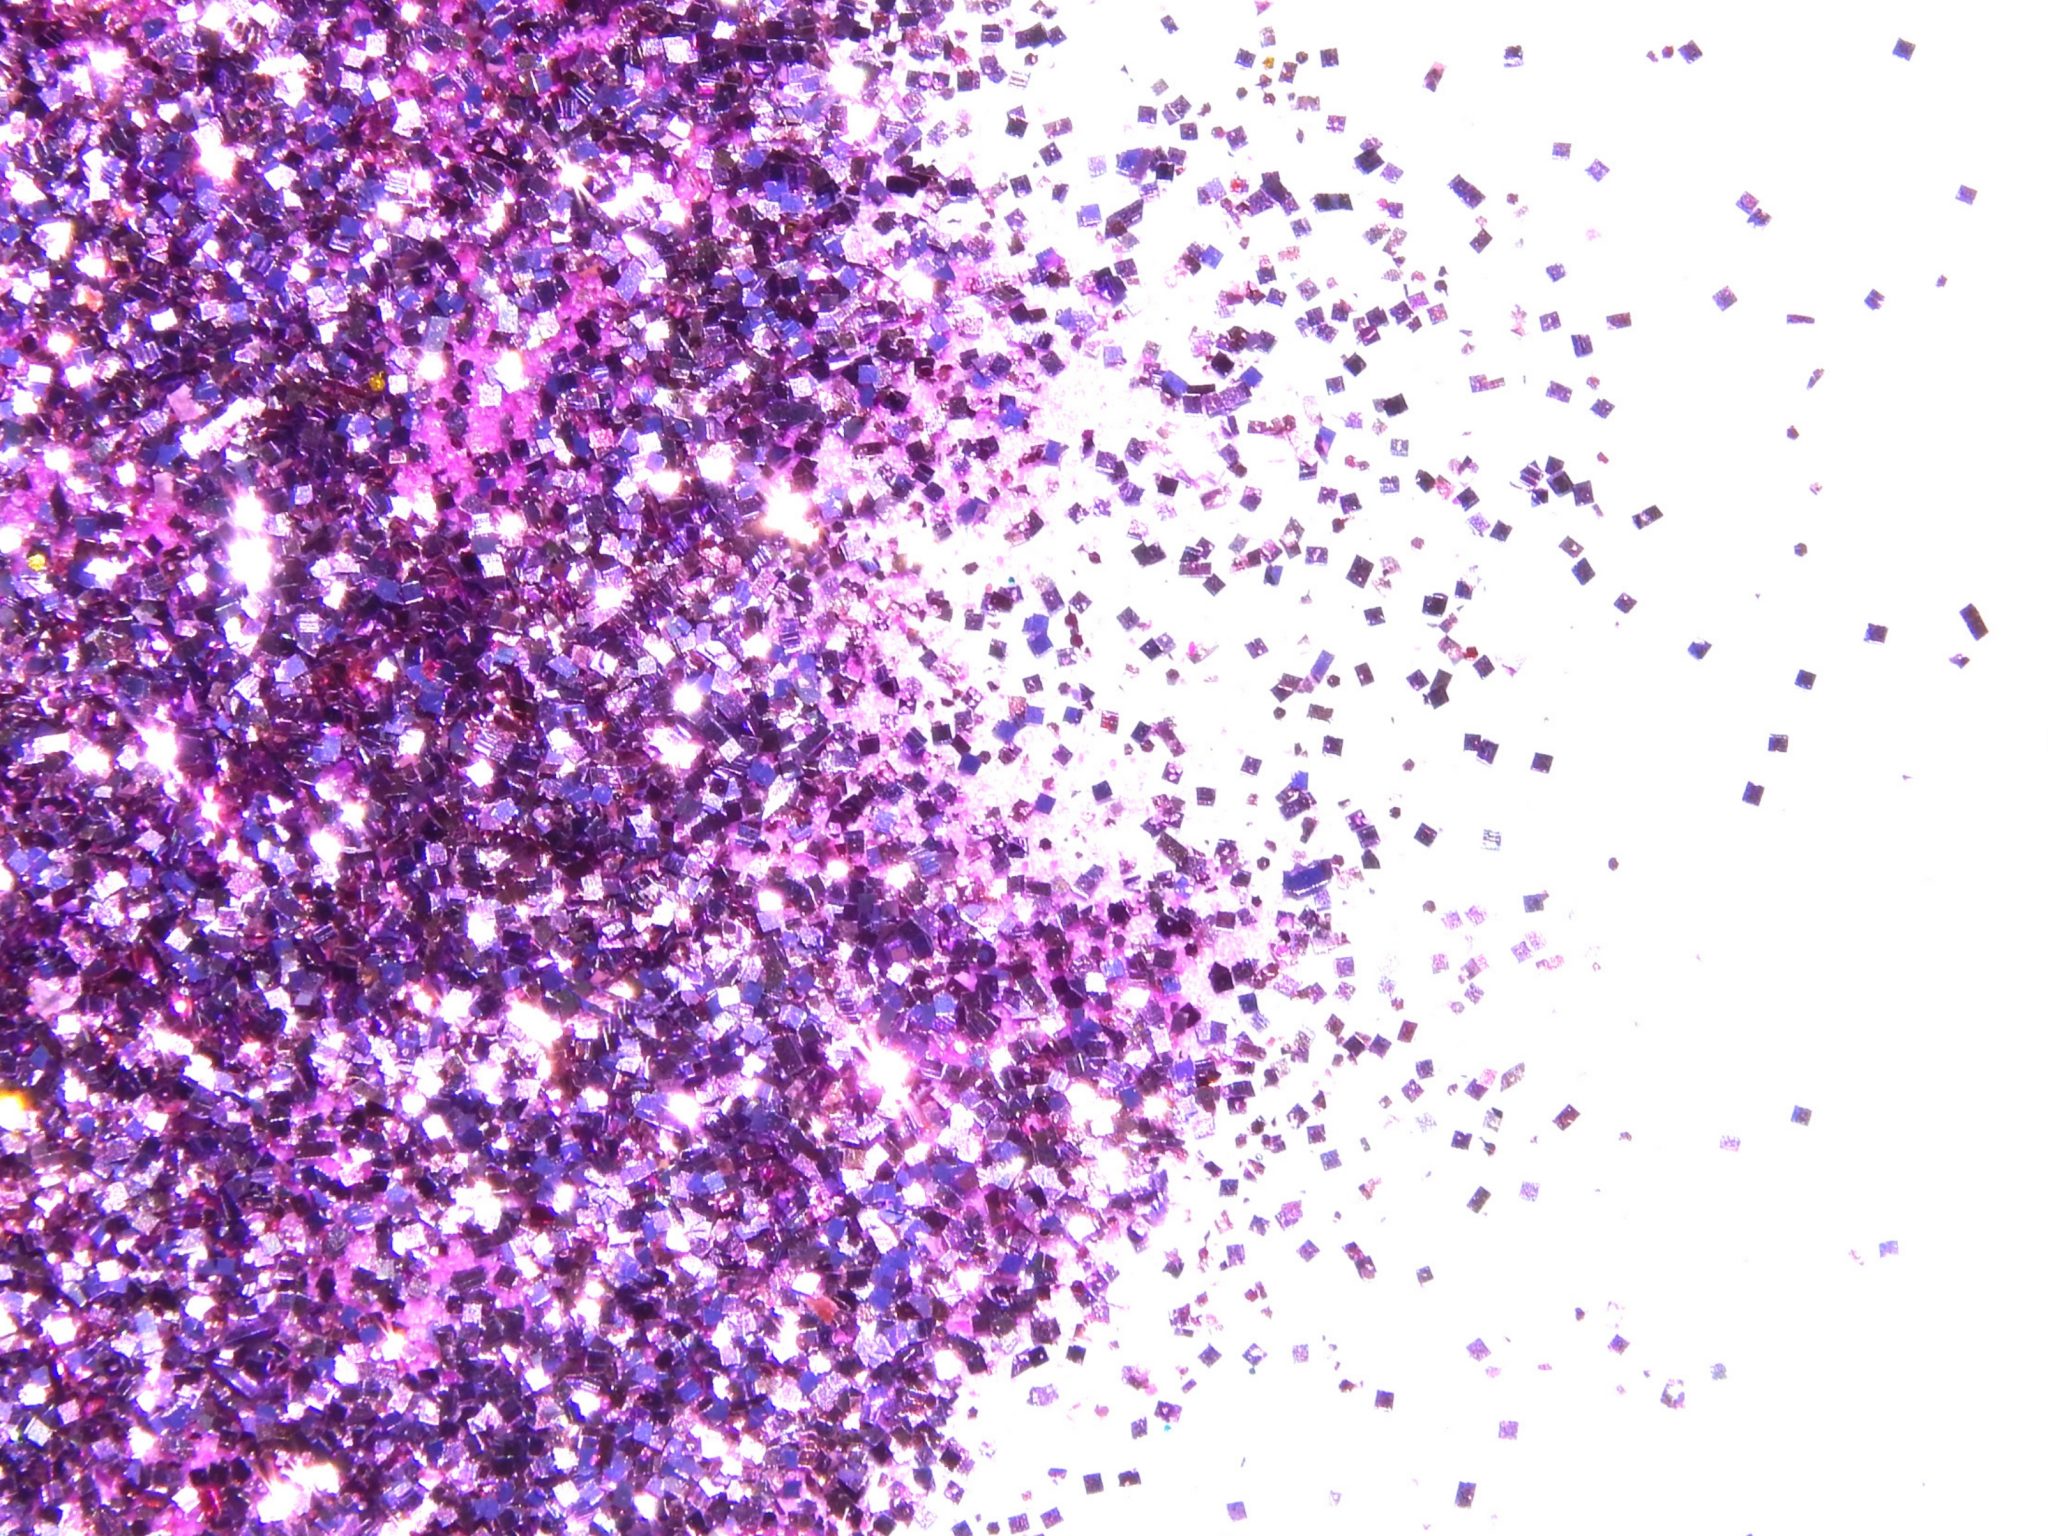 2048x1536 wallpaper Purple Art Craft Glitter Sparkle iPad Wallpaper 2048x1536 pixels resolution